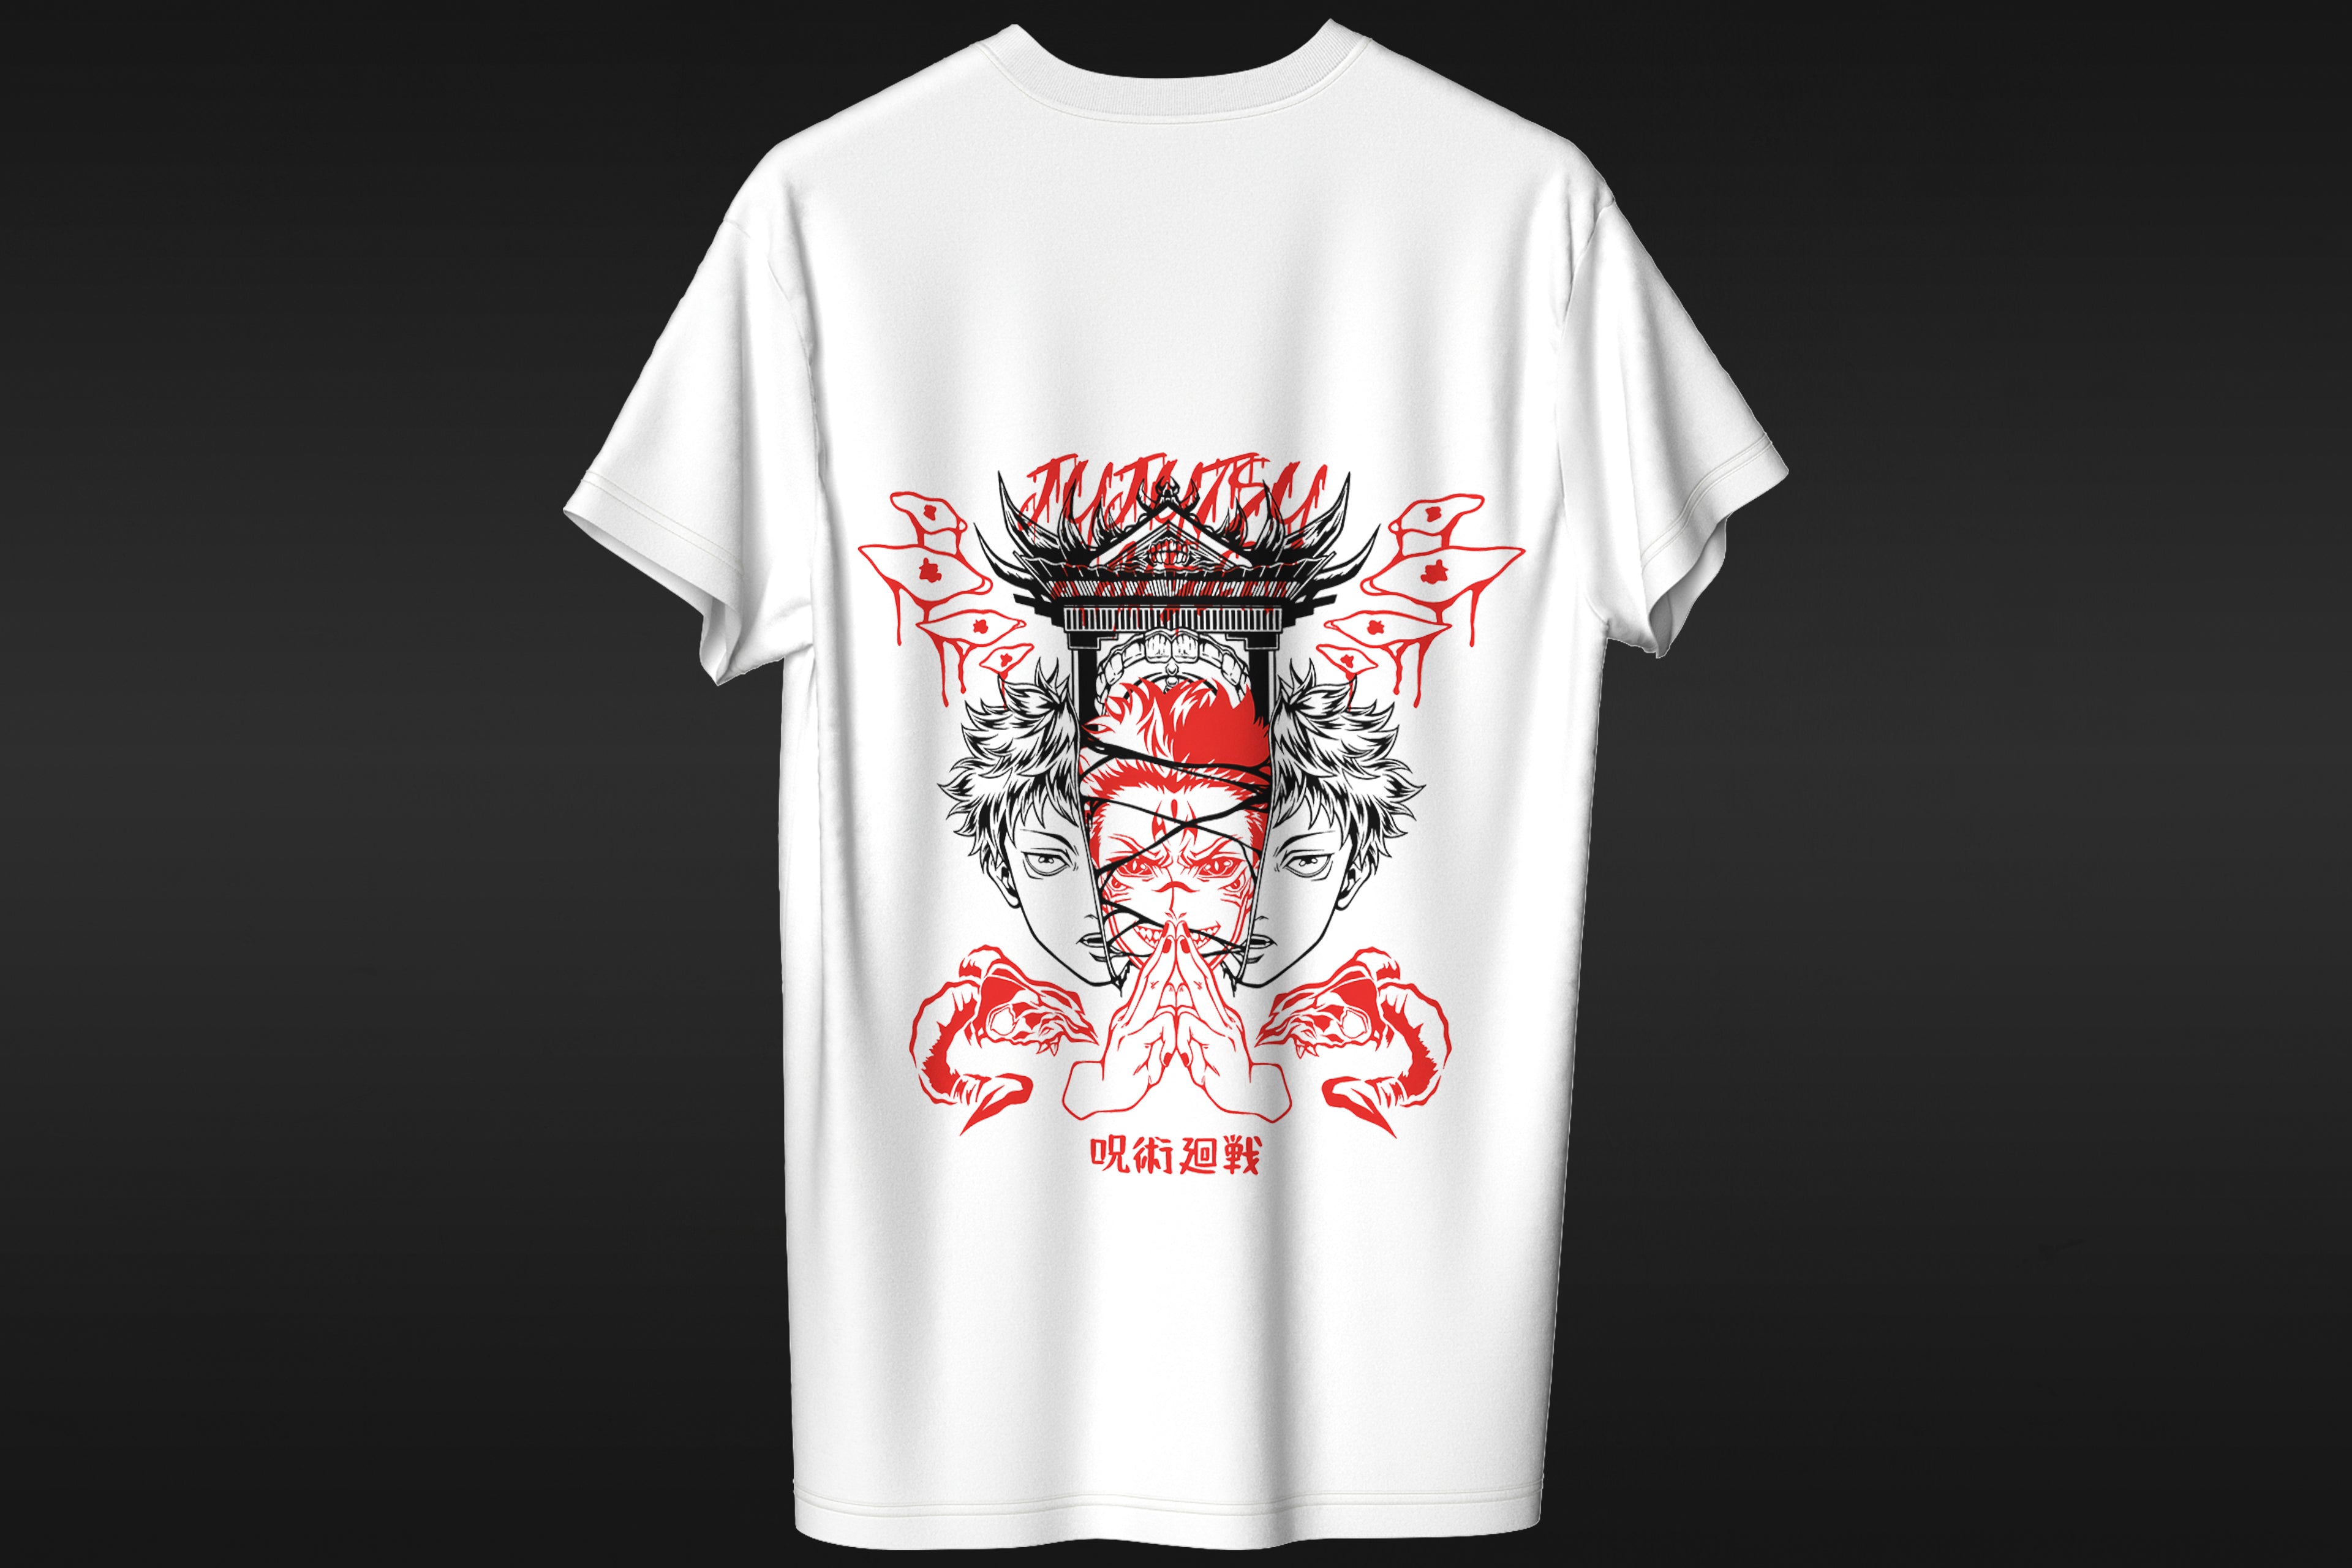 Jujutsu Kaisen -  Anime T-shirt